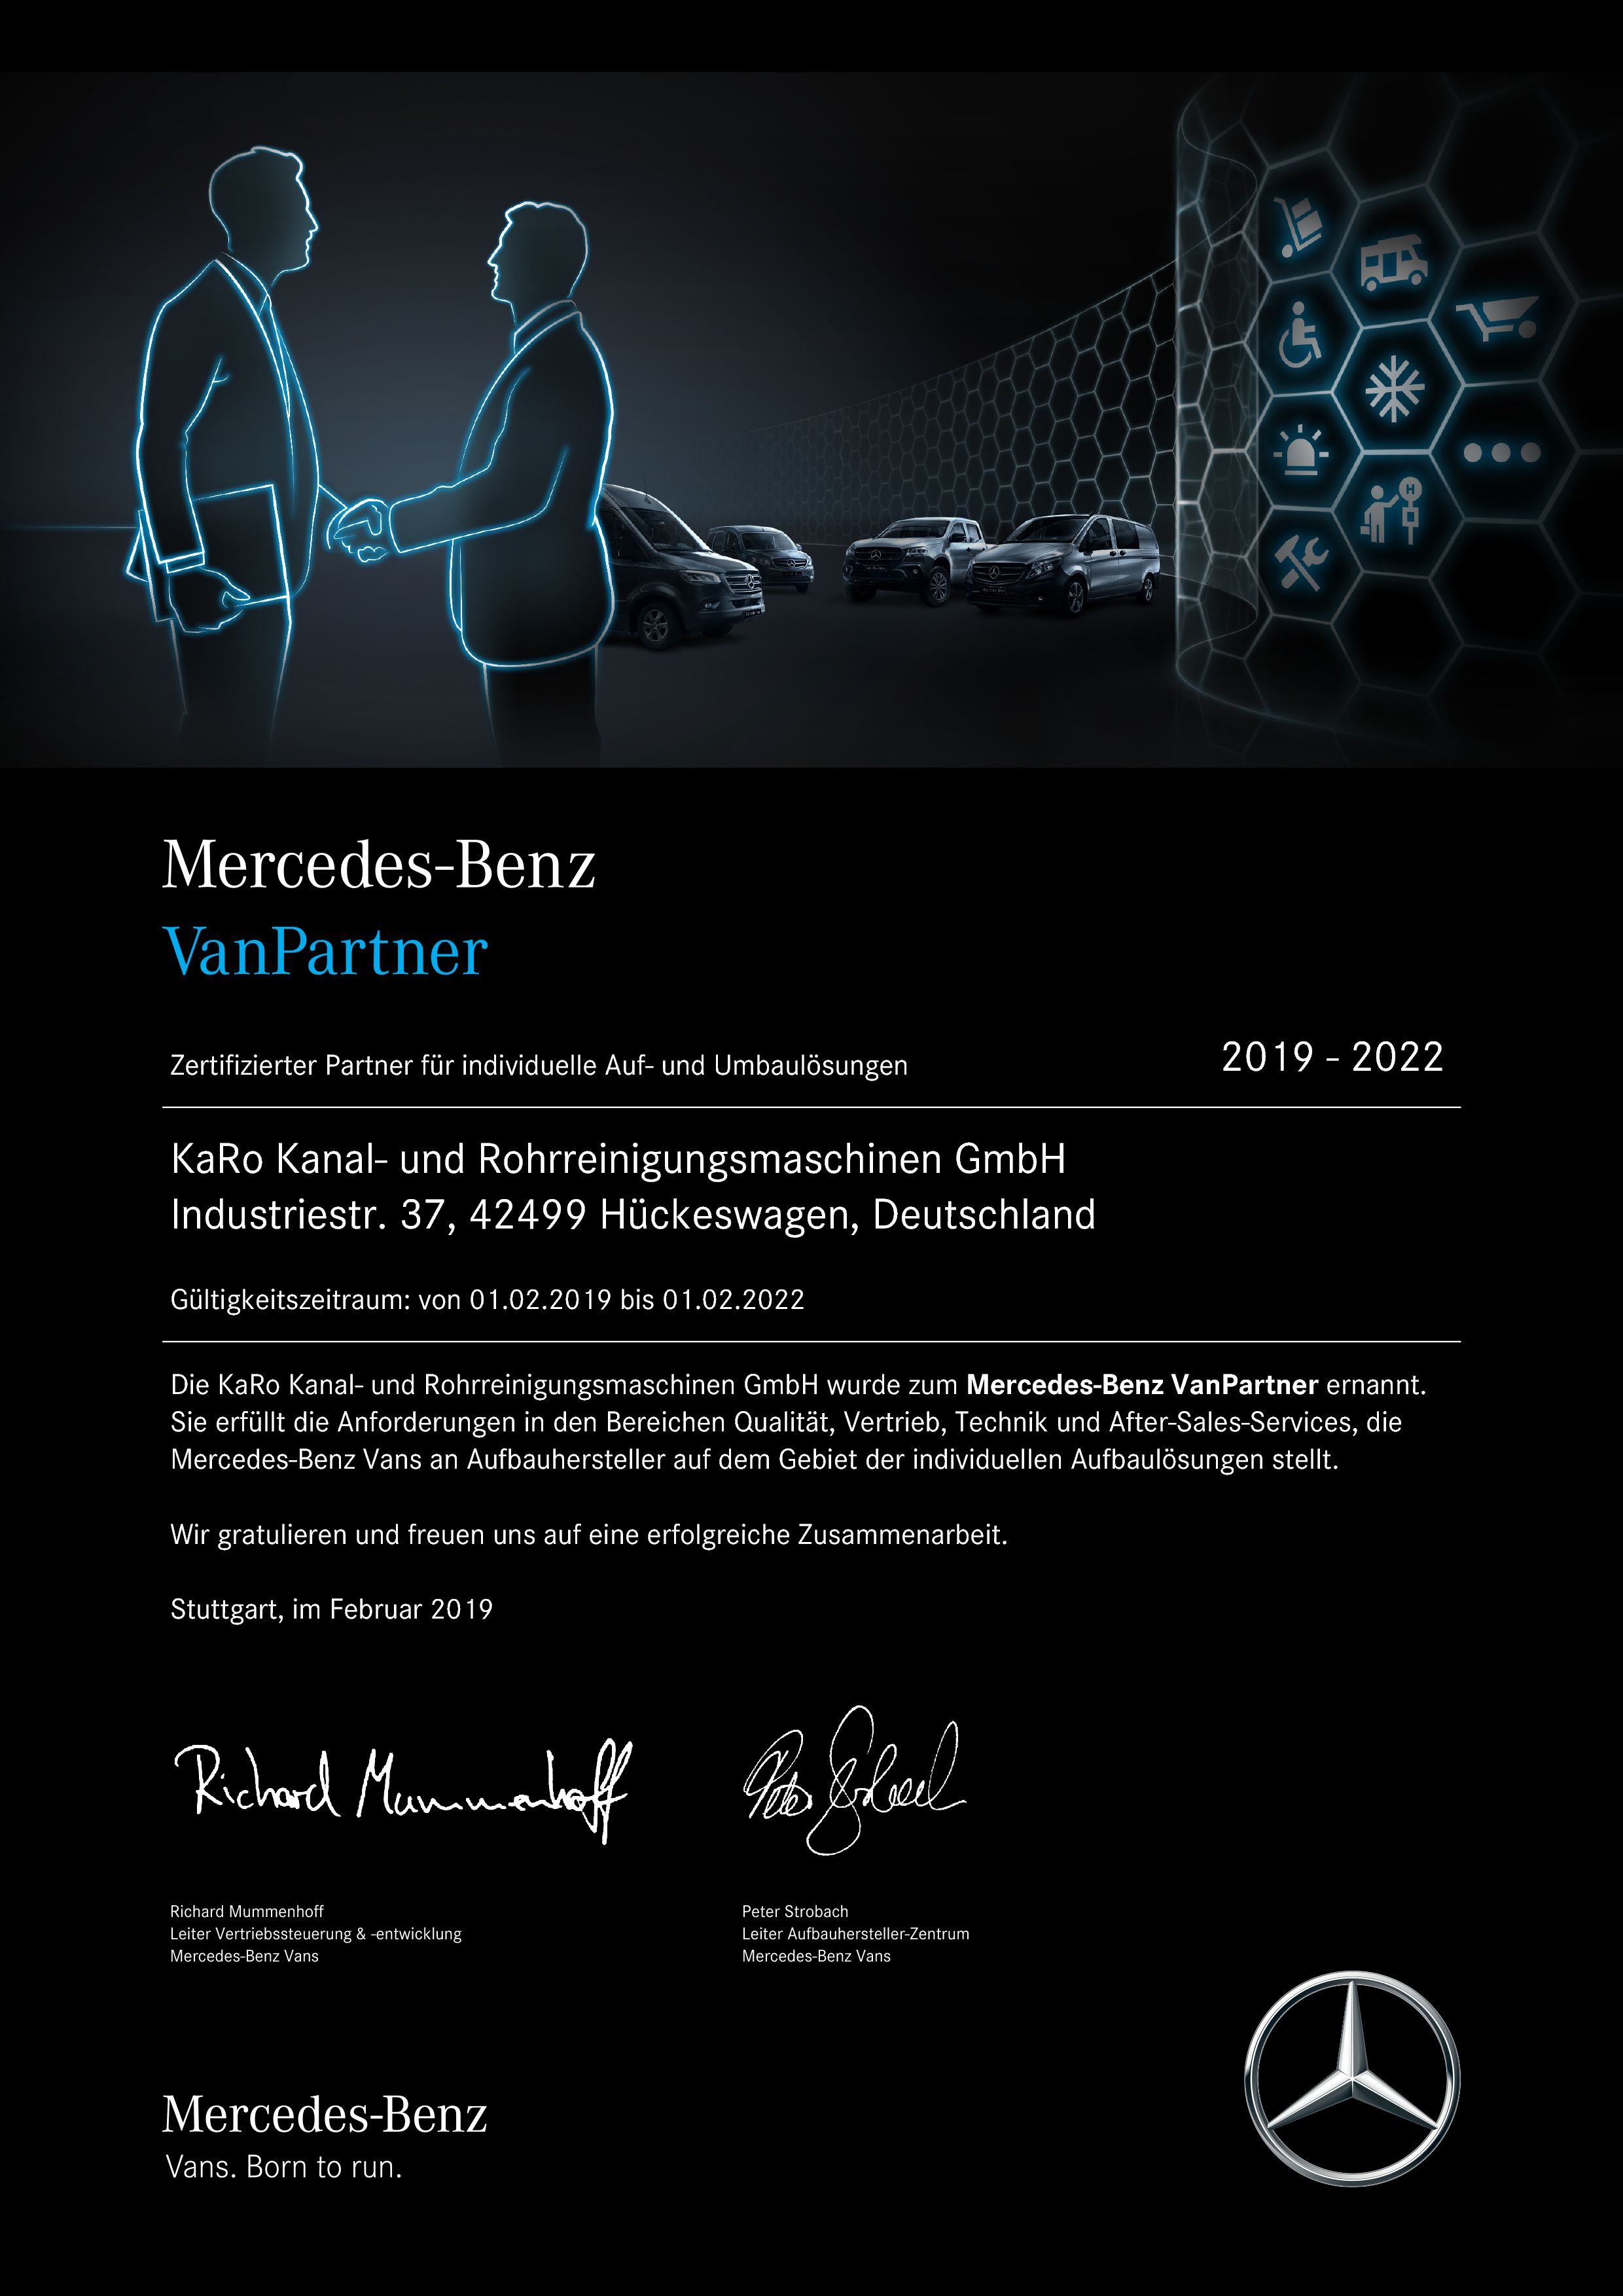 KaRo ist Mercedes-Benz Van Partner